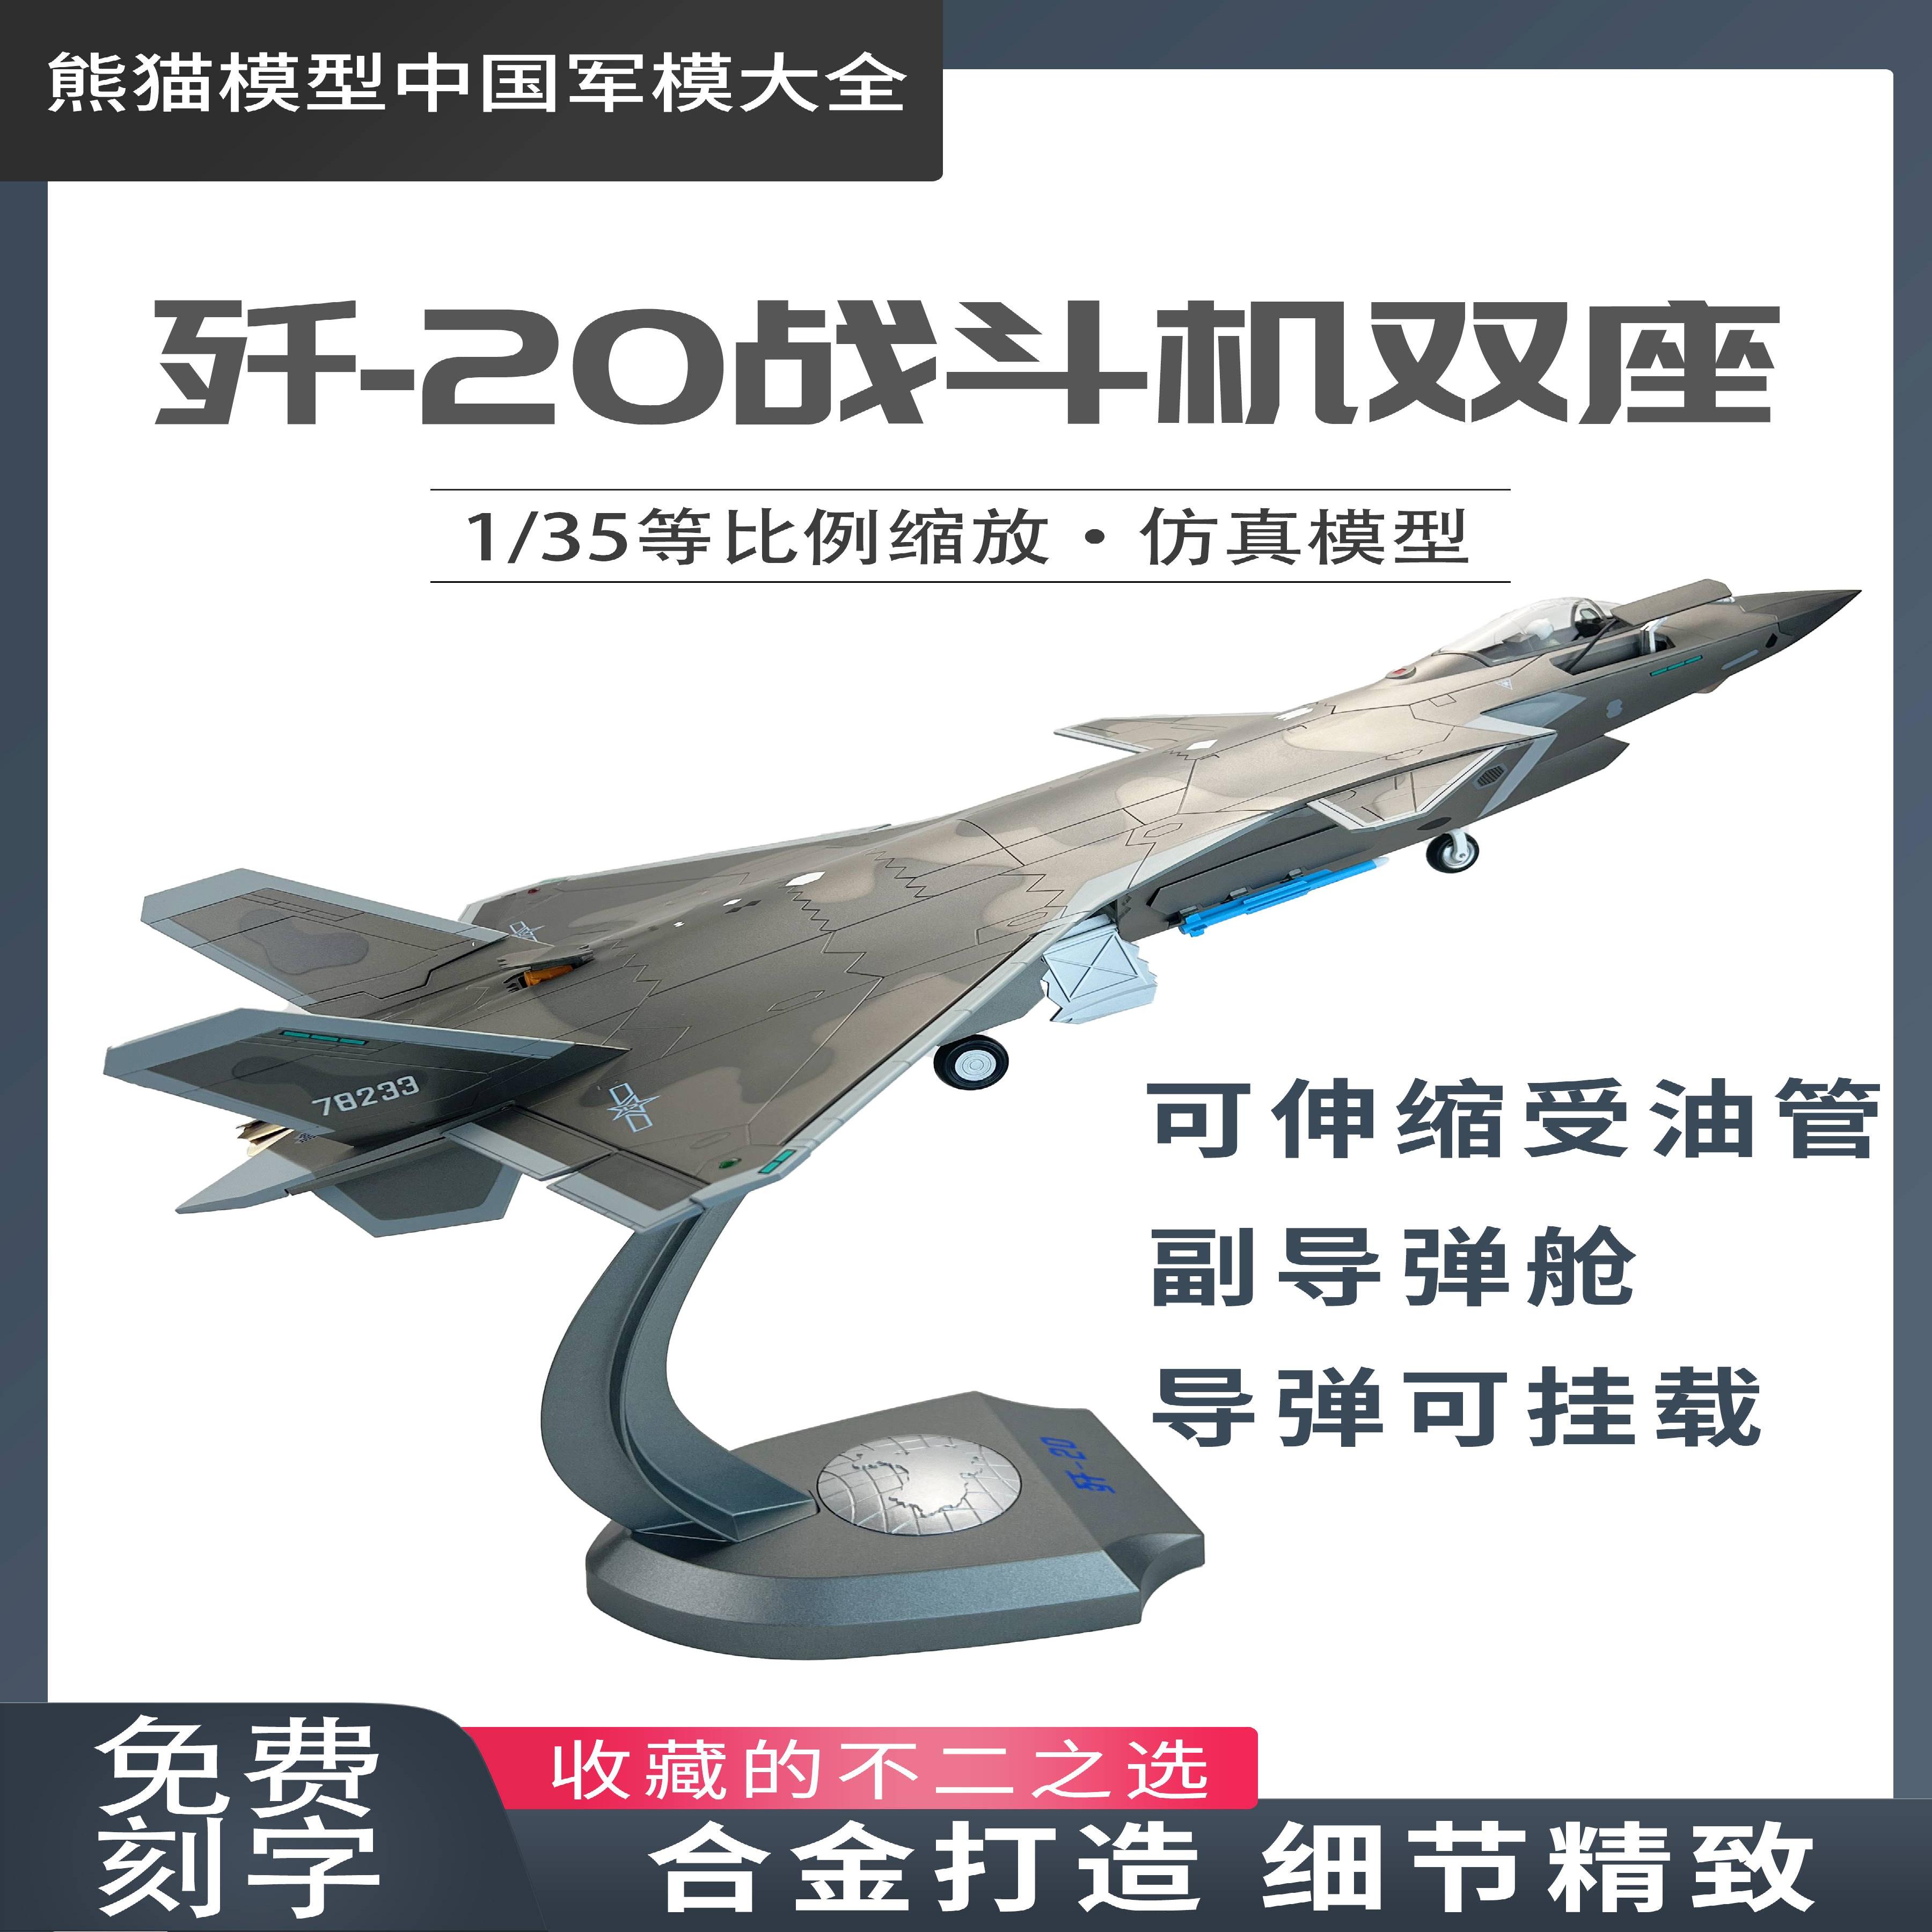 /1:35歼20隐形战斗机J20B单座双座版合金仿真模型纪念品收藏送礼